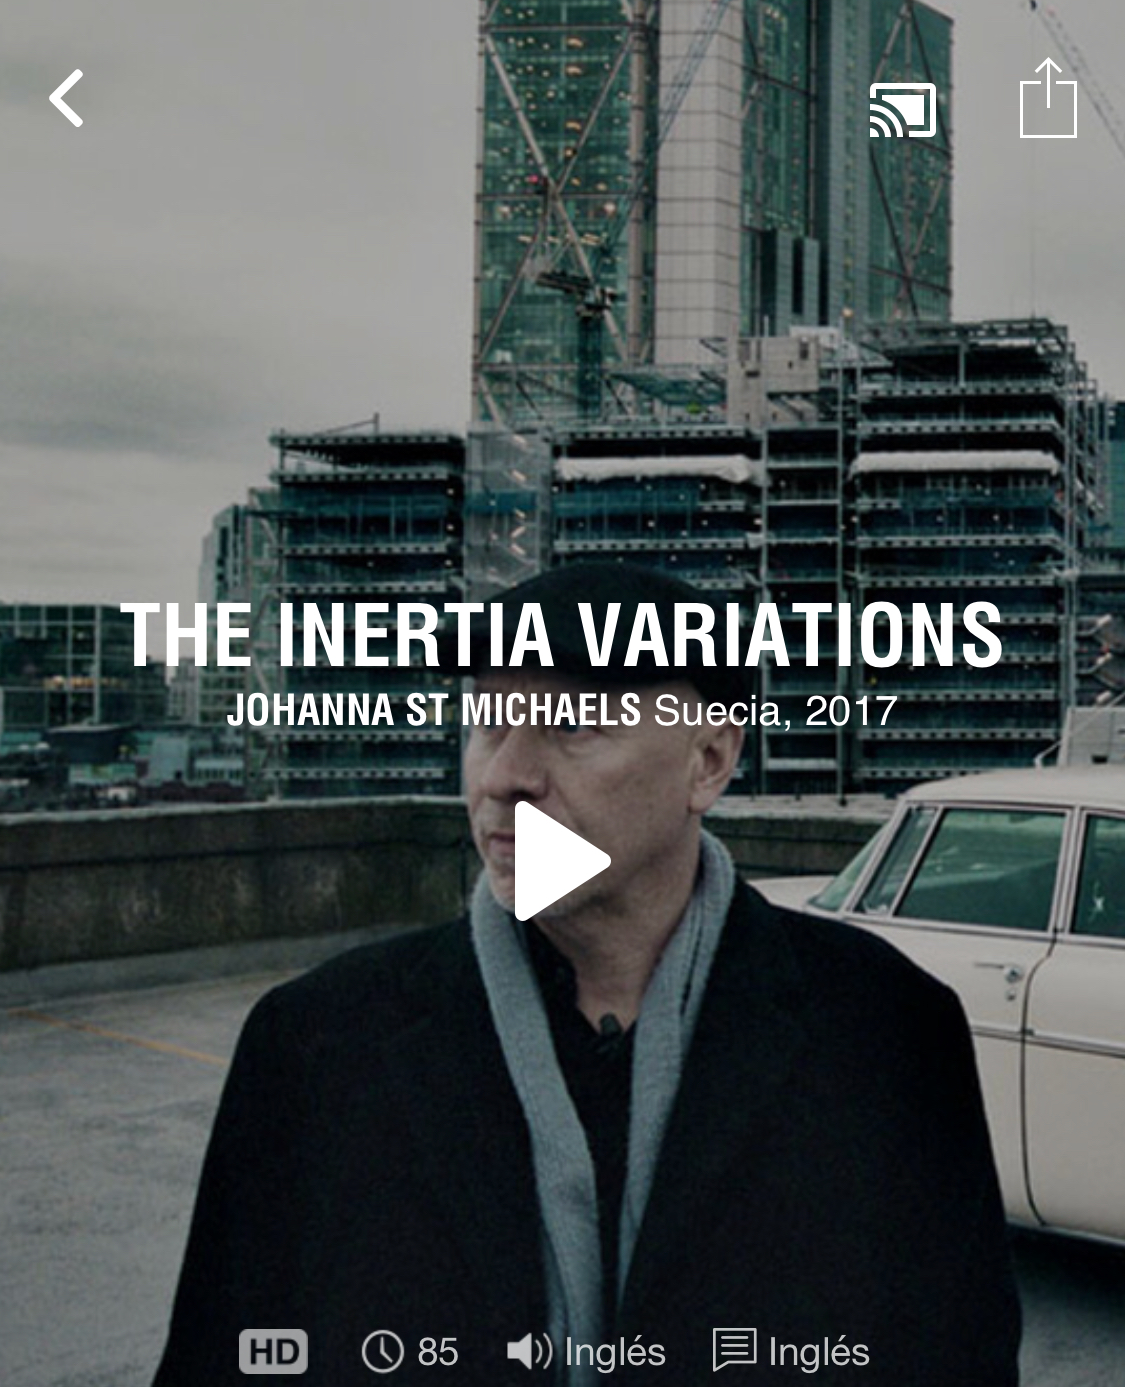  فیلم سینمایی The Inertia Variations به کارگردانی Johanna St Michaels